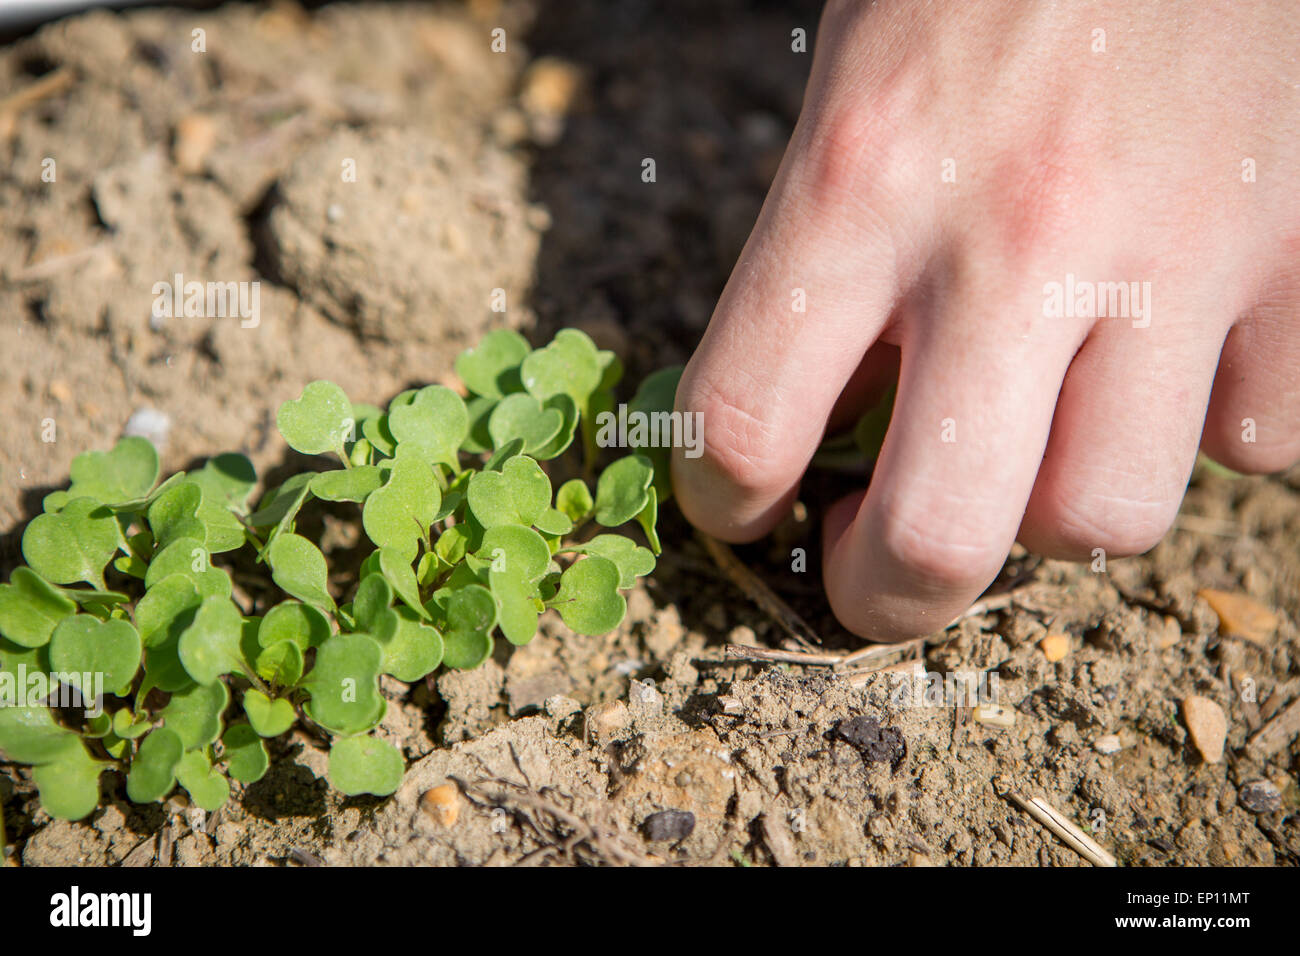 Hände, die kleine grüne Pflanze aus dem Boden aufnehmen. Stockfoto